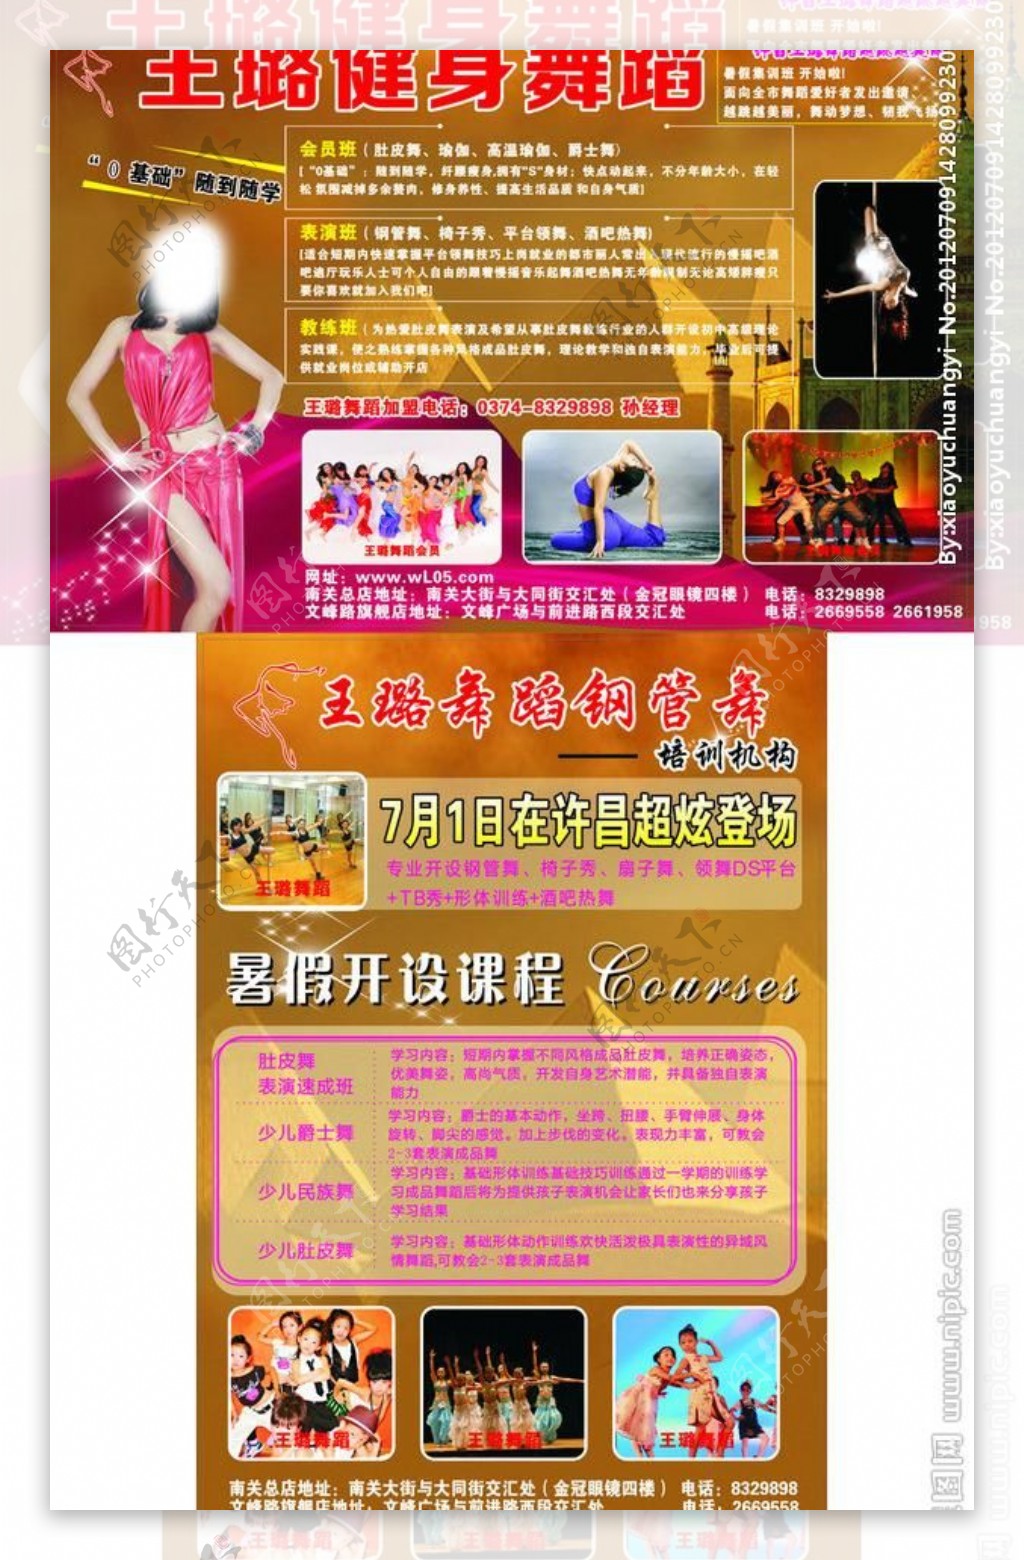 王璐健身舞蹈宣传页图片